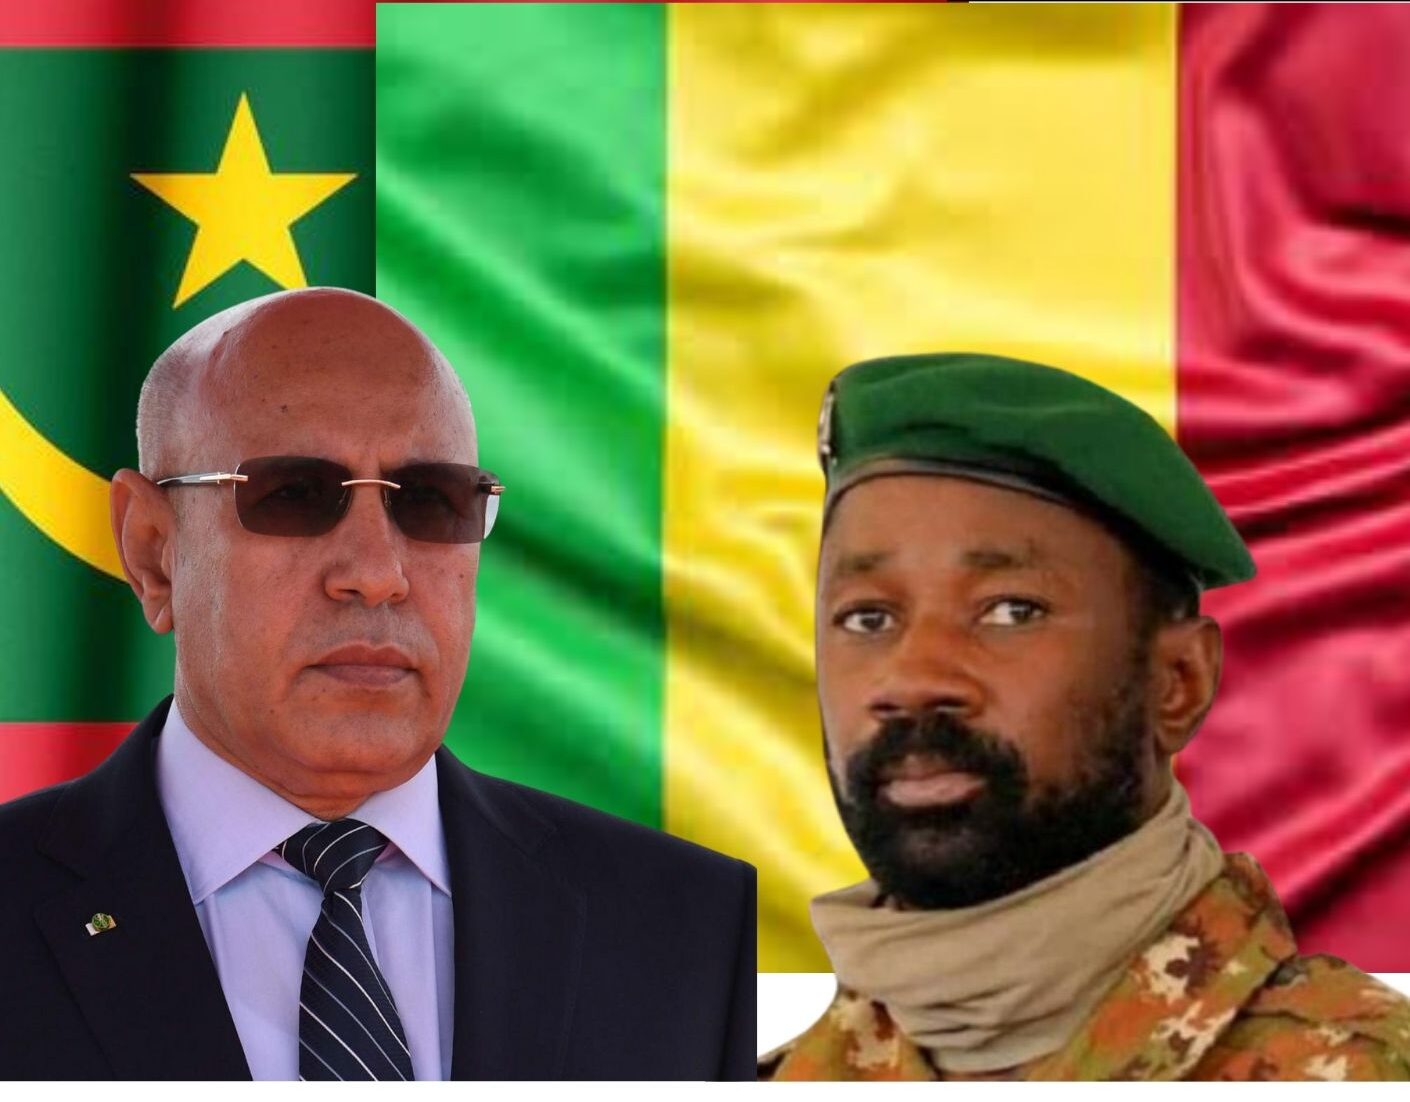 La frontière sinueuse entre le Mali et la Mauritanie est devenue le théâtre d’une escalade de tensions entre forces armées et civile